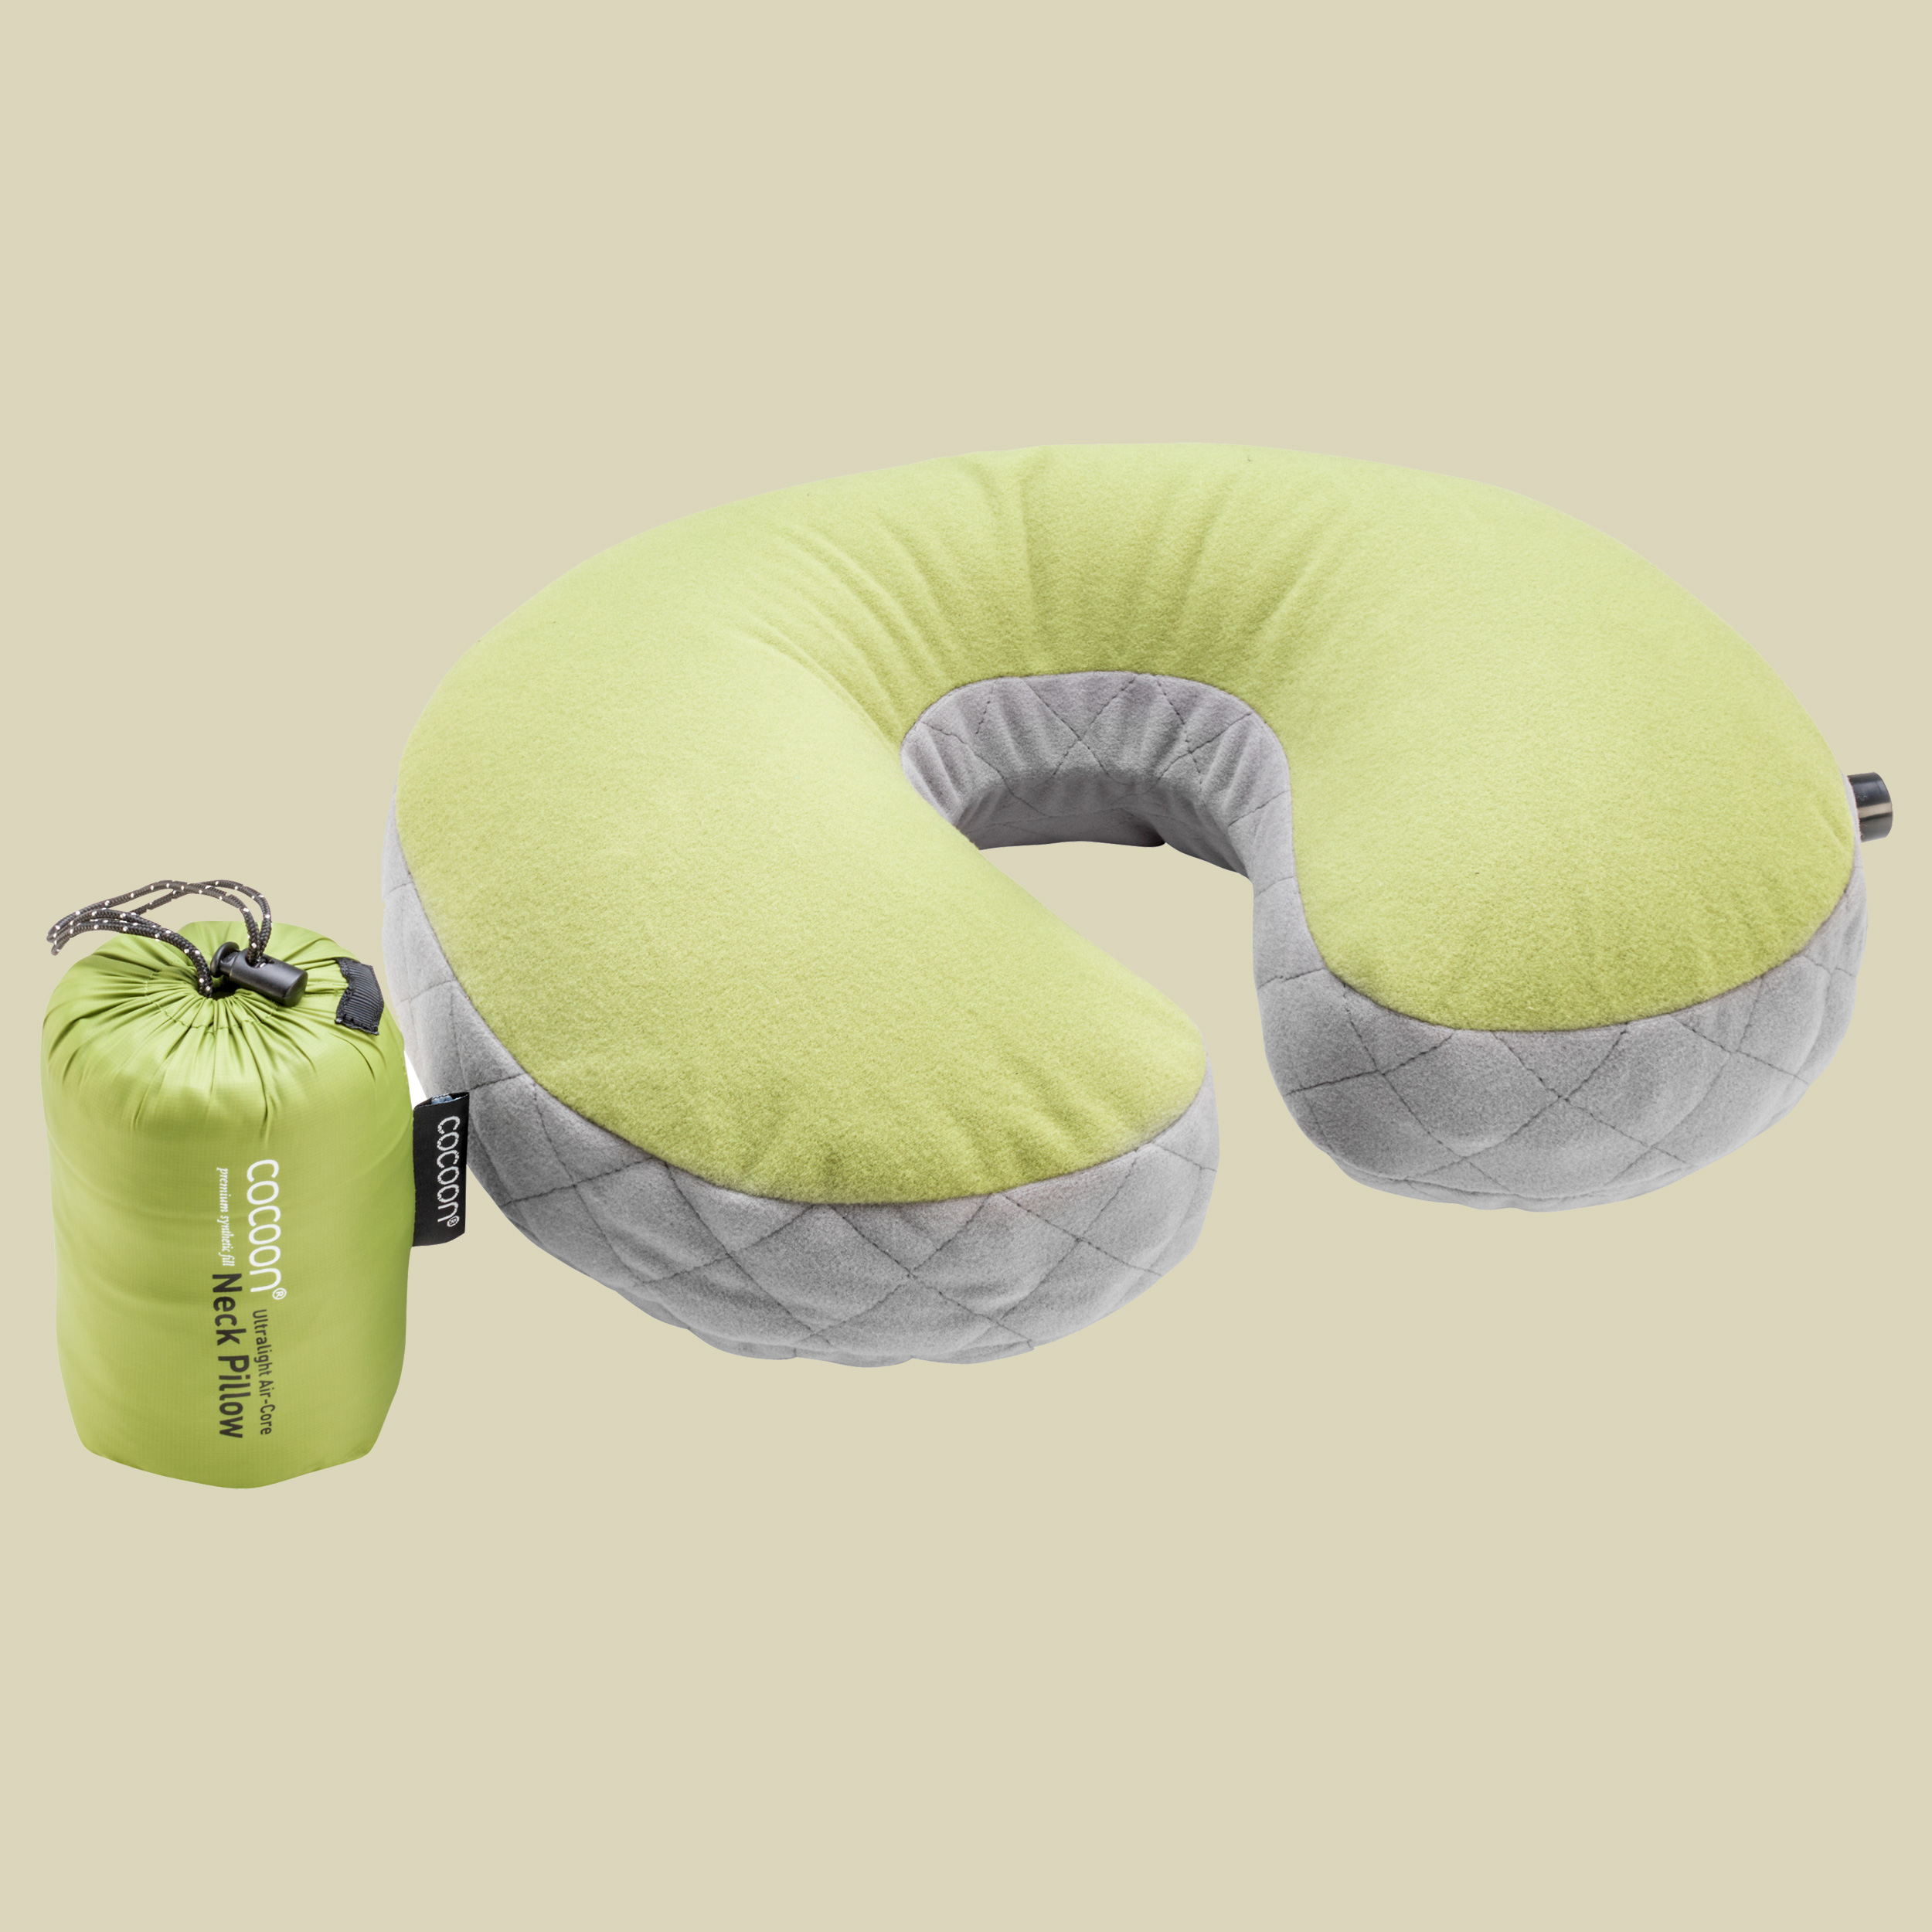 Air-Core Pillow Ultralight